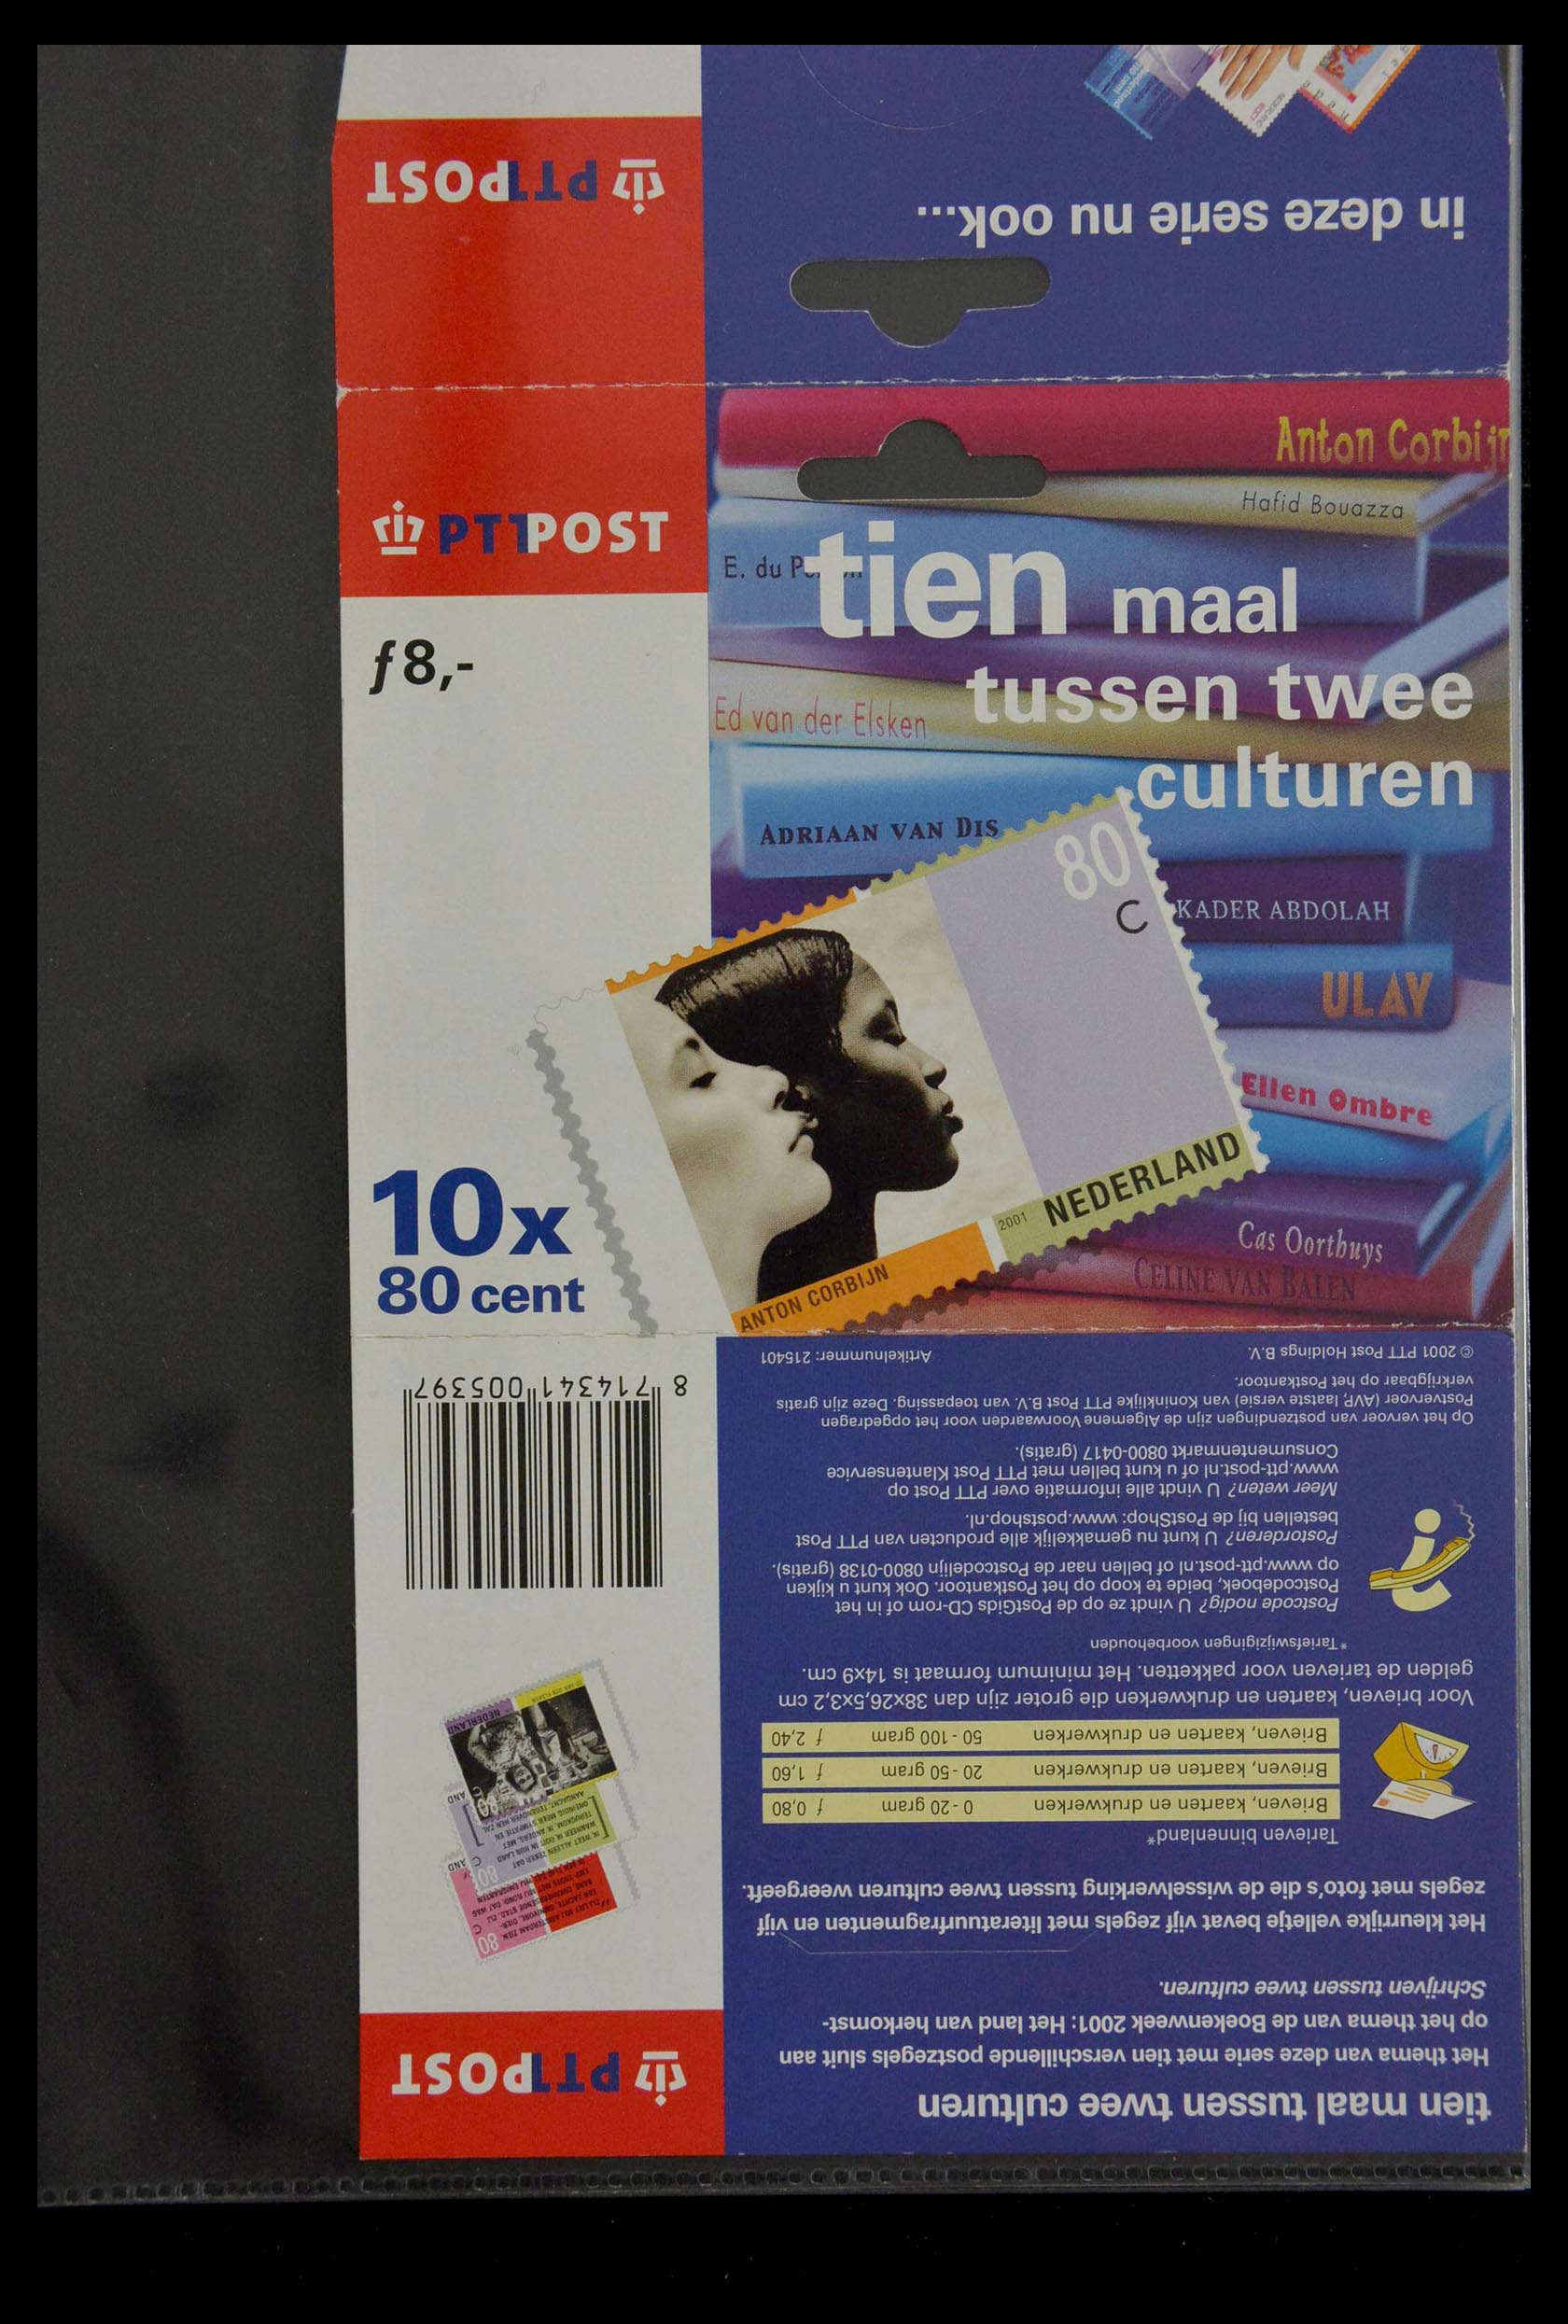 28888 120 - 28888 Nederland hangmapjes 1997-2008.